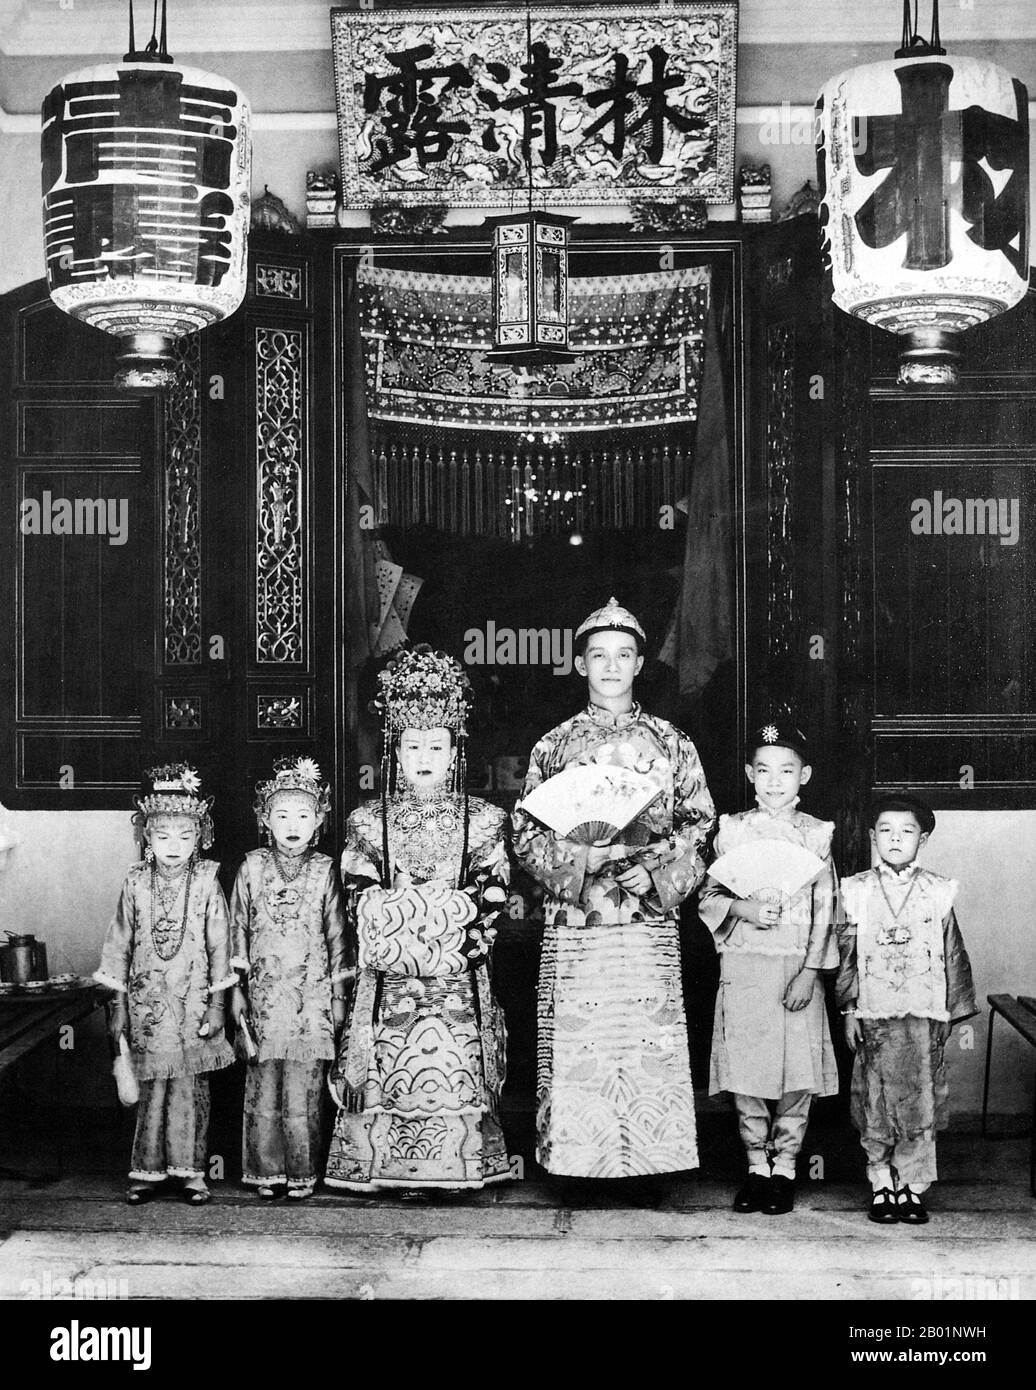 Malaysia/Singapur: Eine Braut und ein Bräutigam aus Penang posieren für ihr Hochzeitsfoto vor dem Haus der Familie, Anfang des 20. Jahrhunderts. Peranakan Chinese und Baba-Nyonya sind die Bezeichnungen für die Nachkommen chinesischer Einwanderer aus dem späten 15. Und 16. Jahrhundert, die während der Kolonialzeit in den malaiisch-indonesischen Archipel von Nusantara kamen. Mitglieder dieser Gemeinde in Malaysia bezeichnen sich als „Nyonya-Baba“ oder „Baba-Nyonya“. Nyonya ist der Begriff für die Weibchen und Baba für die Männchen. Sie gilt insbesondere für die ethnische chinesische Bevölkerung der British Straits Settlements in Malaya. Stockfoto